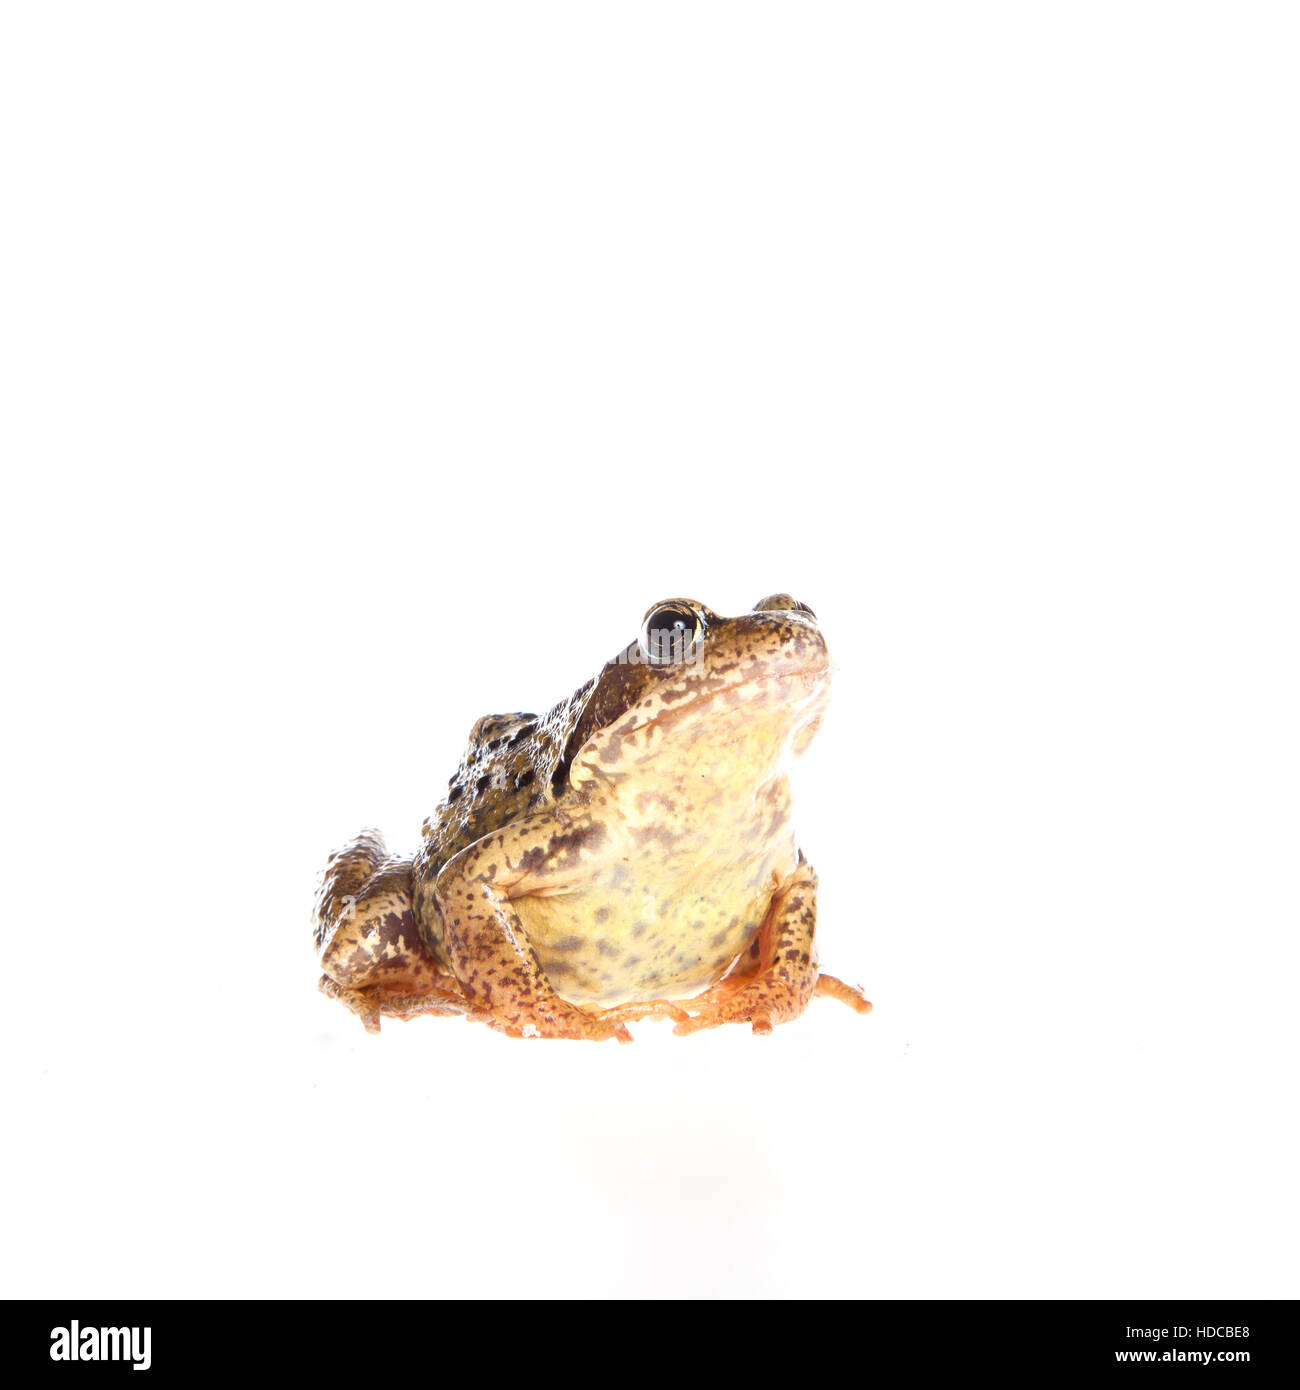 Frog on white Stock Photo